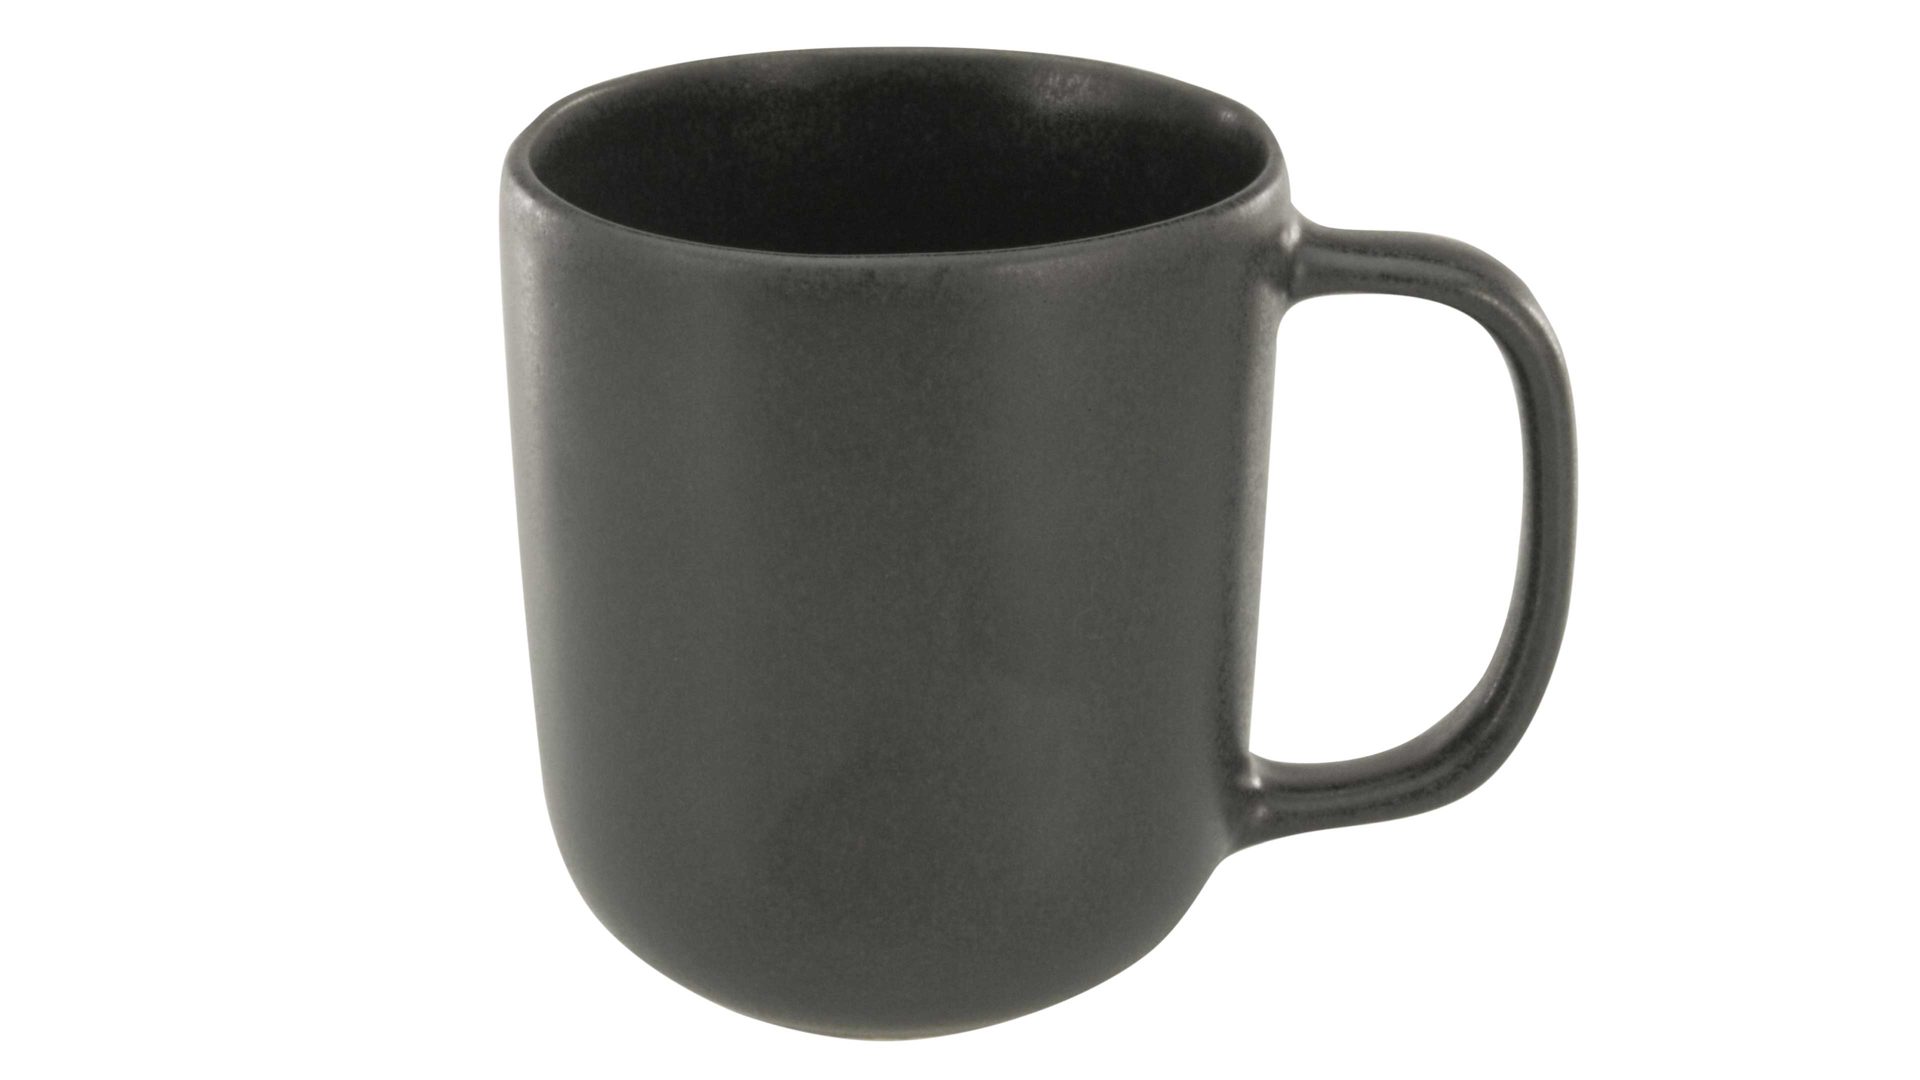 Kaffeebecher Creatable aus Steinzeug in Schwarz CREATABLE Pietra – Henkelbecher schwarzes Steinzeug – ca. 350 ml